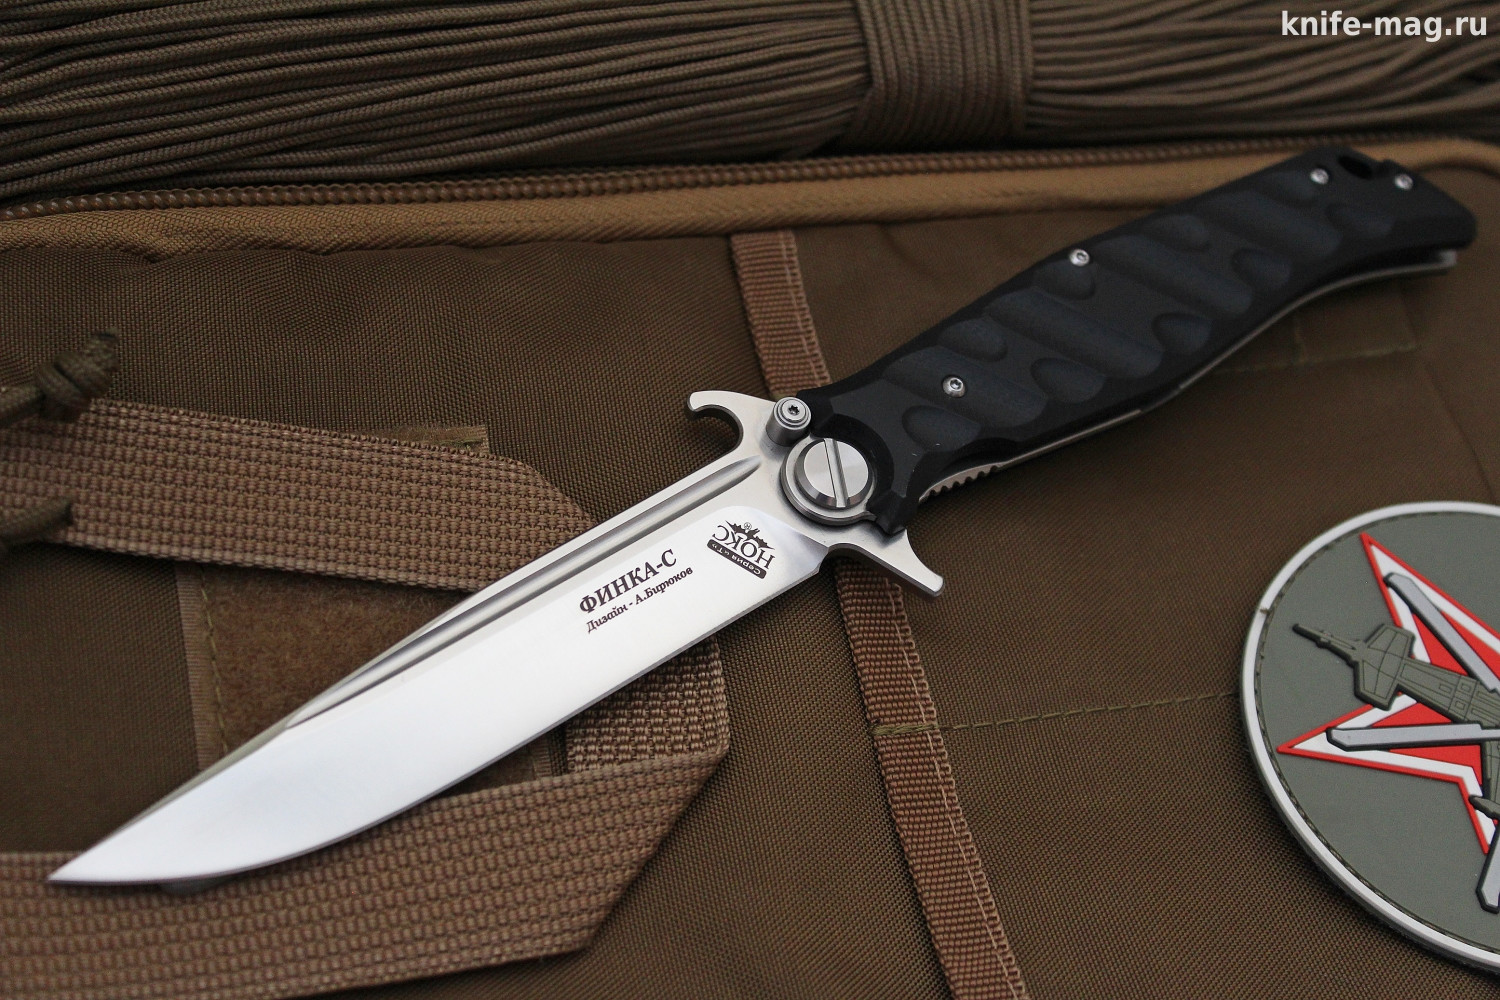 Купить нож  нож Финка С (на подшипниках) | KNIFE-MAG.RU